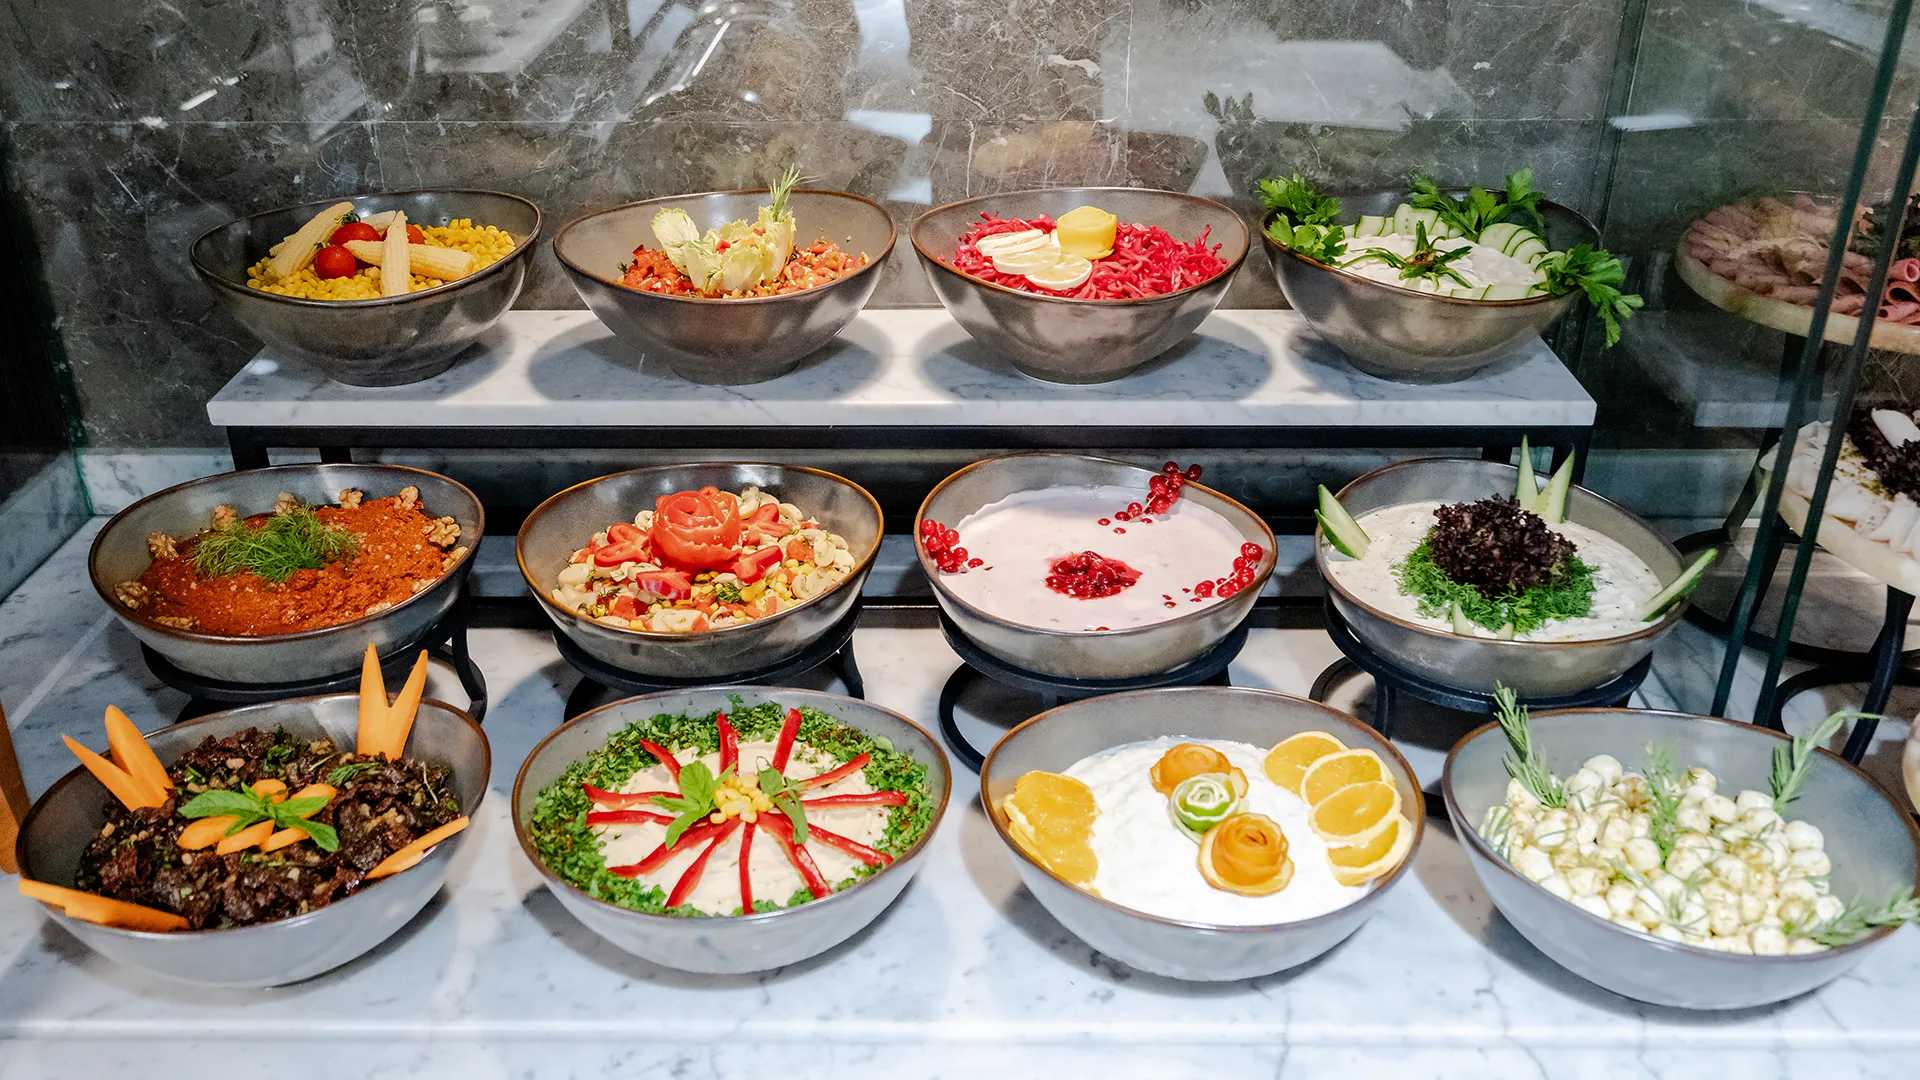 На завтраке в буфете выставлены разные миски с едой.